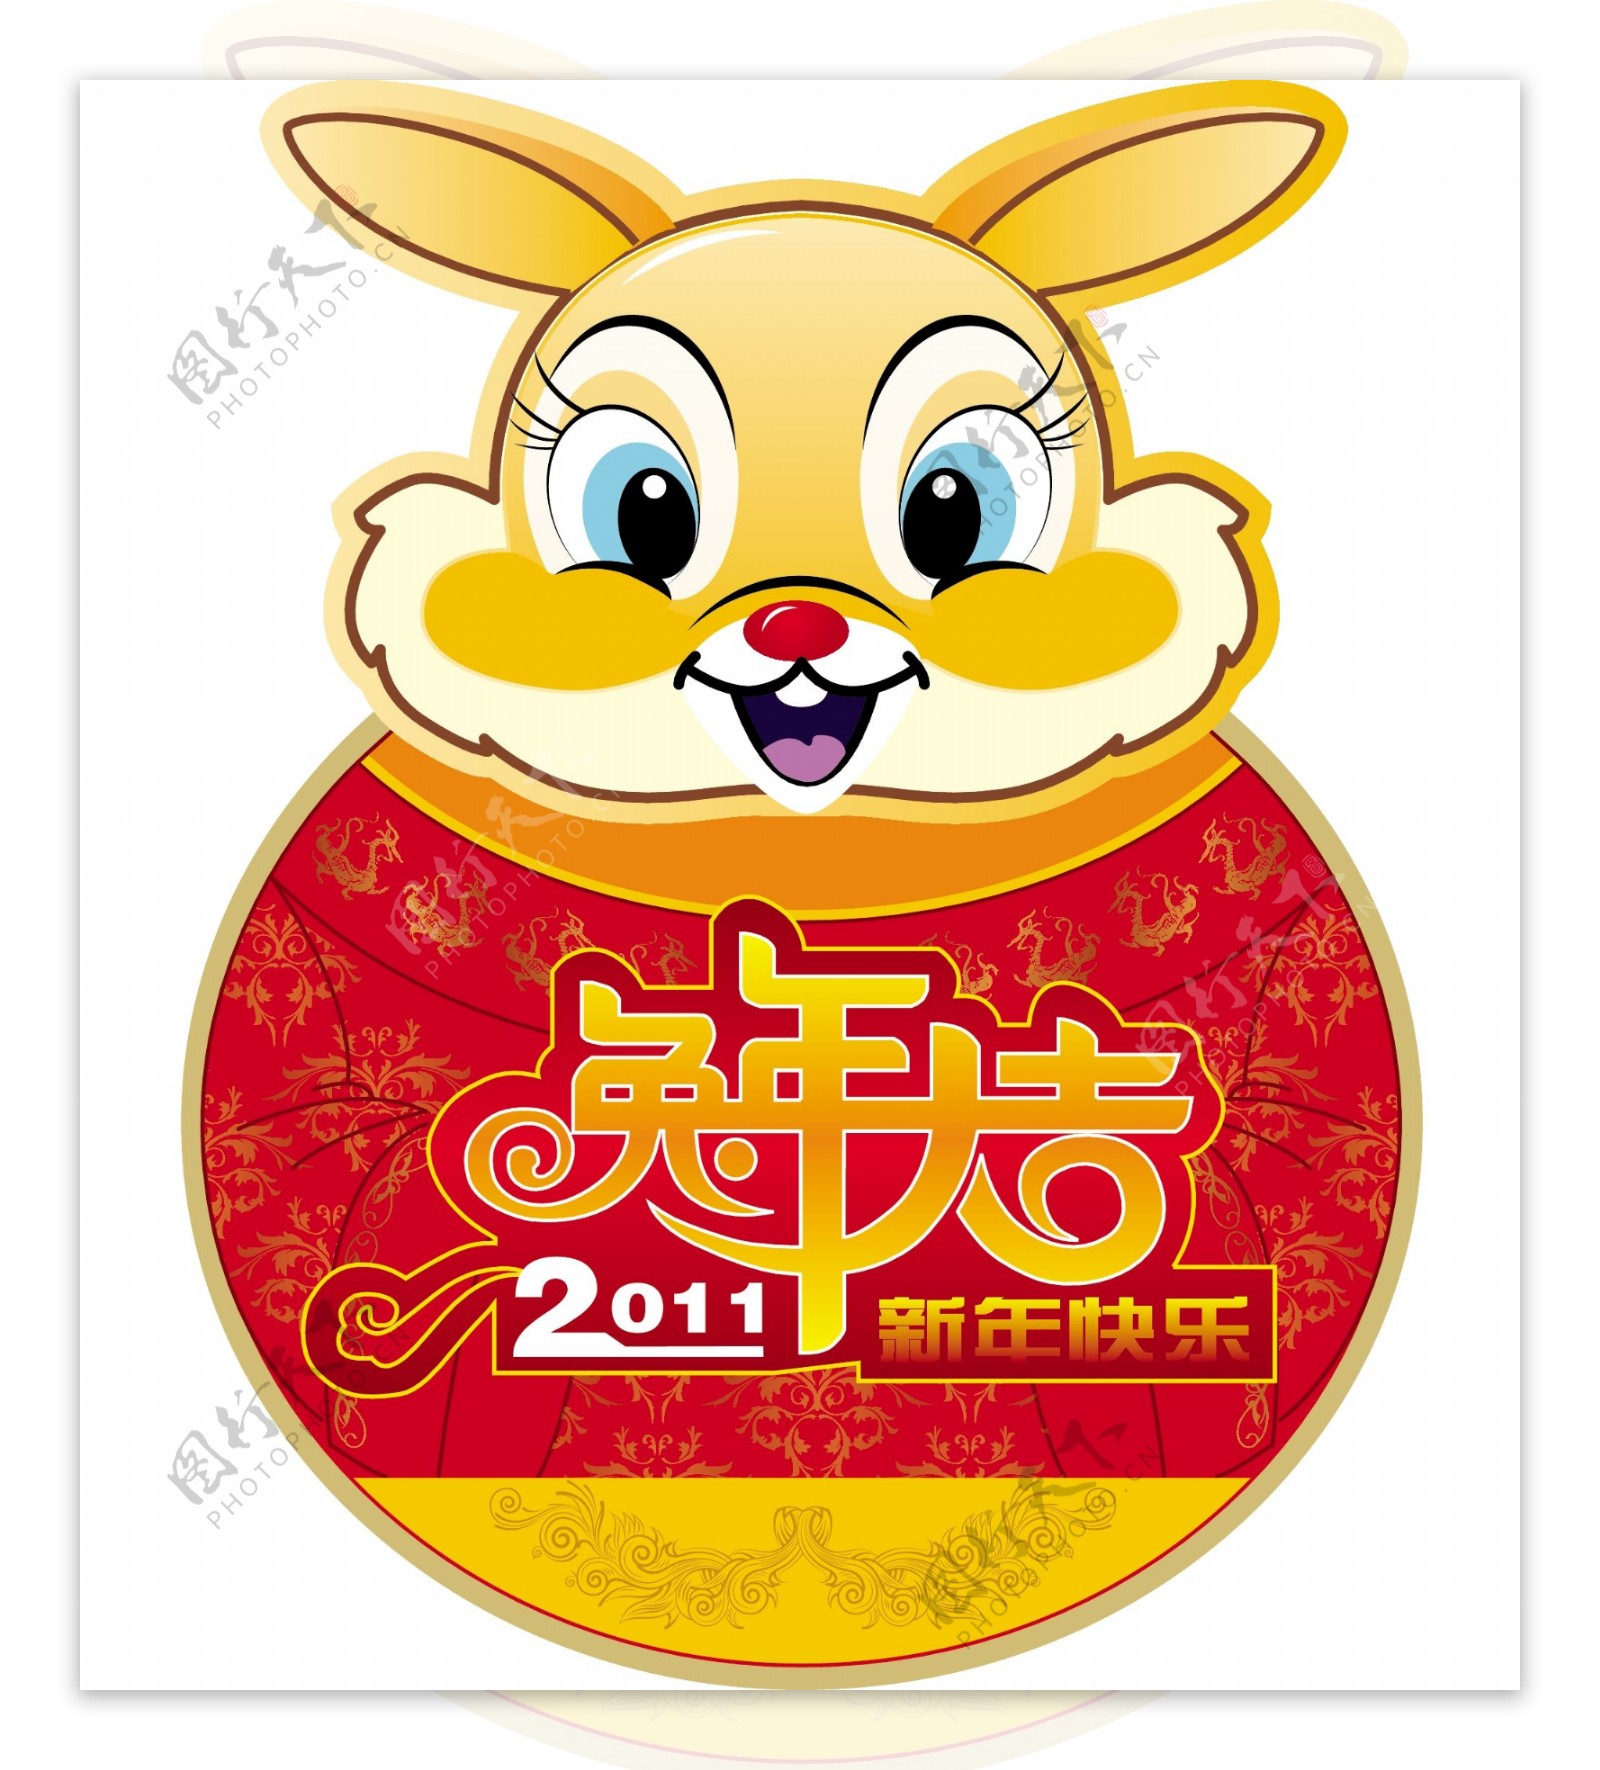 2011兔年卡片封面设计矢量素材